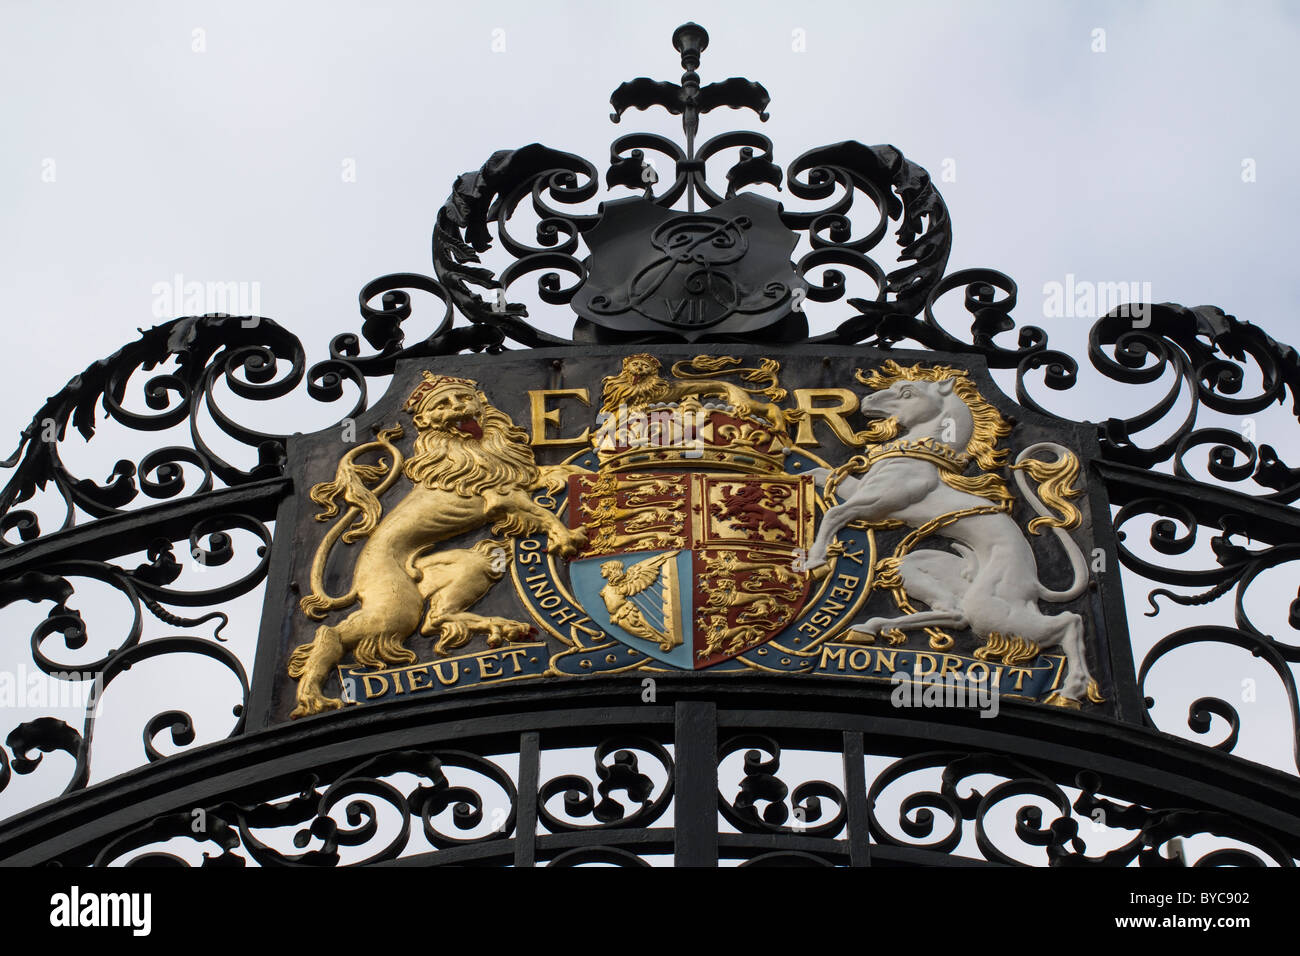 Dieu et mon droit, la devise de la monarchie britannique traduit comme Dieu et mon droit, sur les portes des bâtiments Norman Shaw Westminster Banque D'Images